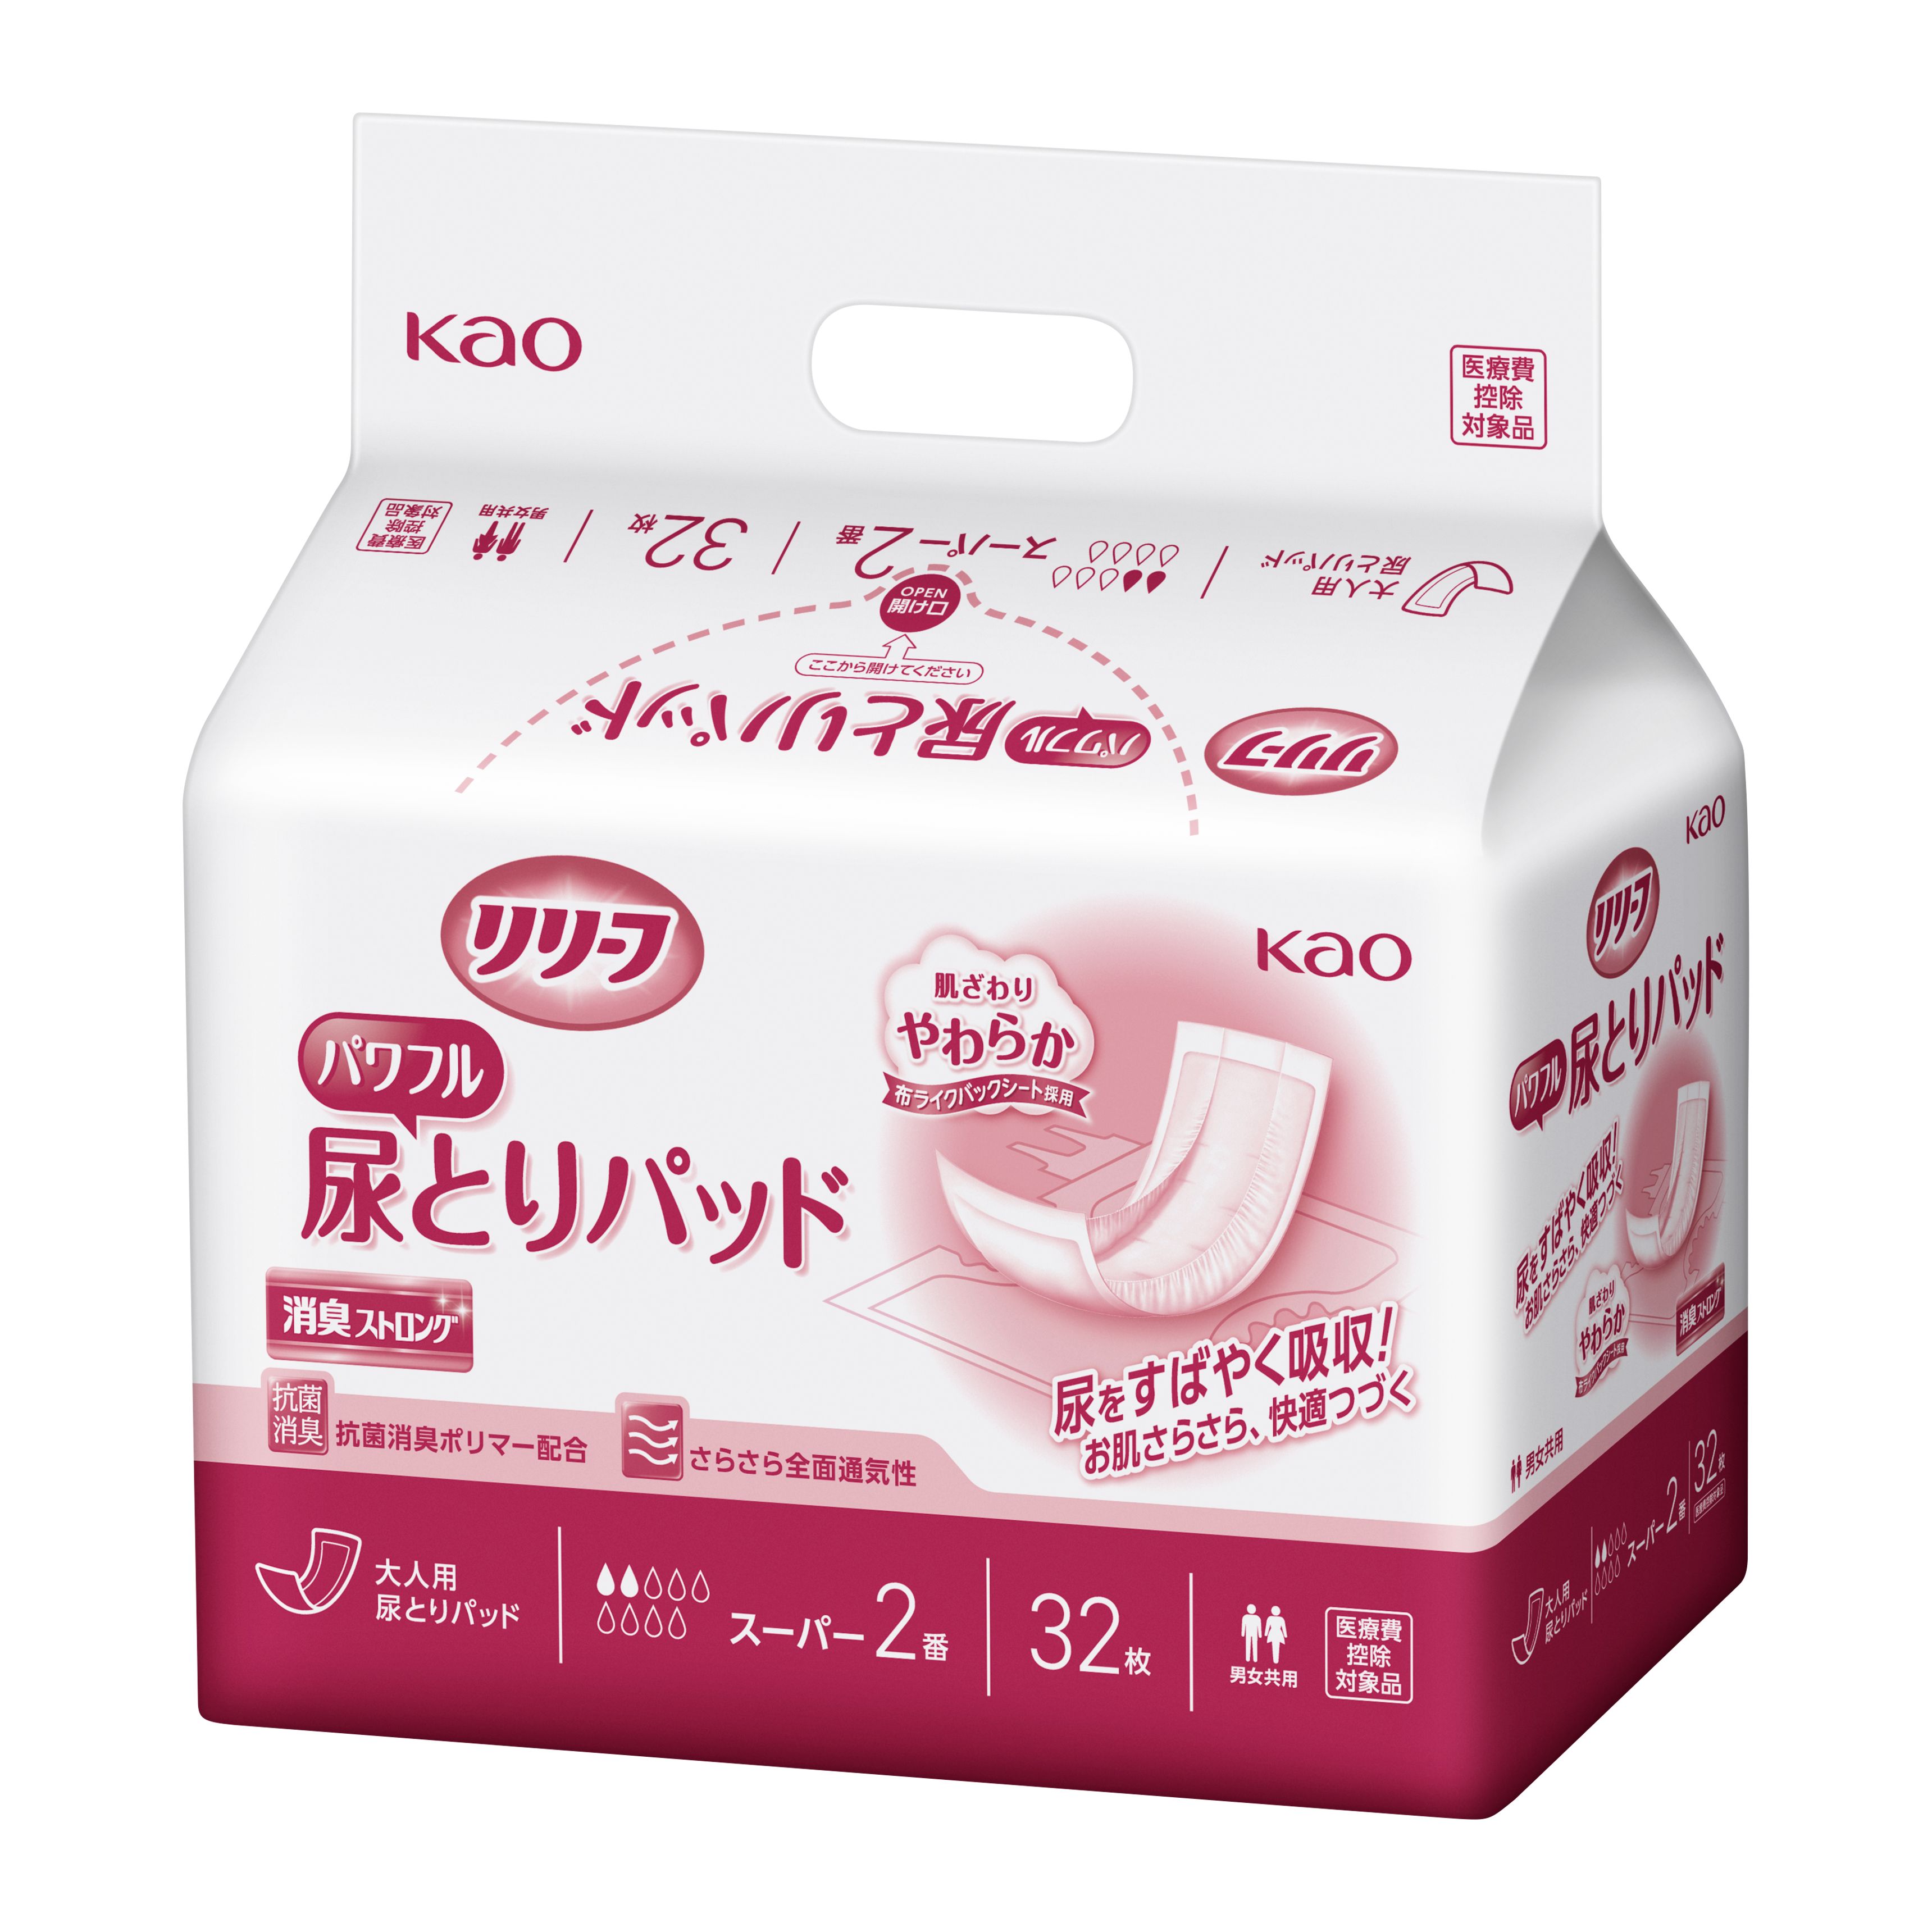 Kao Kao リリーフ パワフル尿とりパッド スーパー 2番 病院施設用 32枚 × 6個 リリーフ 尿漏れパッドの商品画像